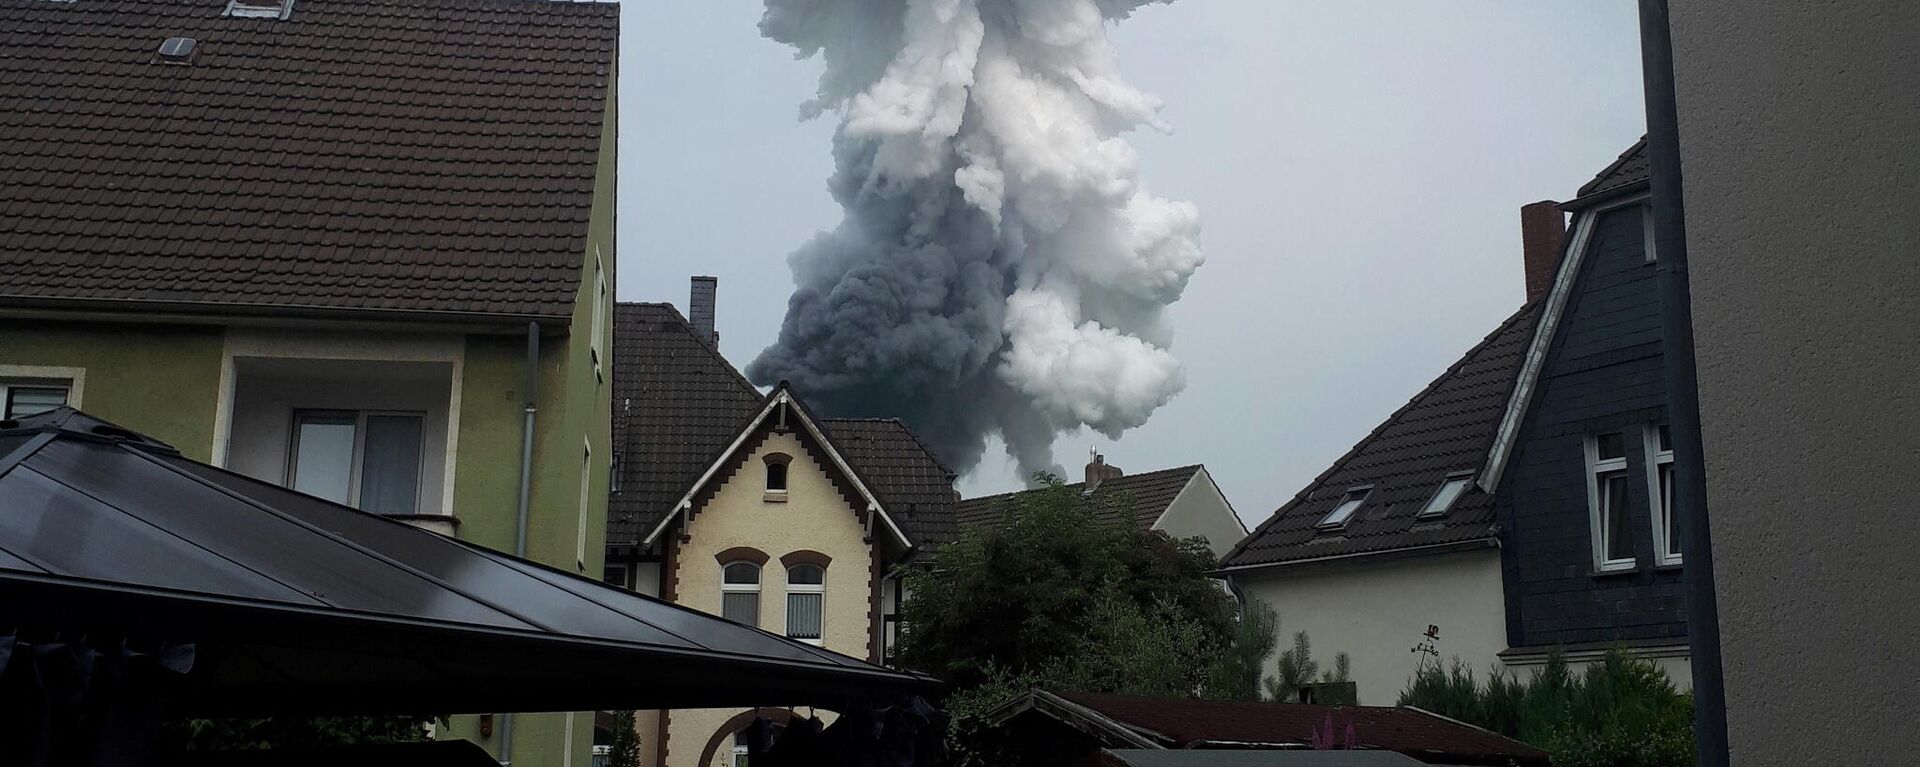 момента взрыва на химическом заводе в немецком Леверкузене - Sputnik Молдова, 1920, 27.07.2021